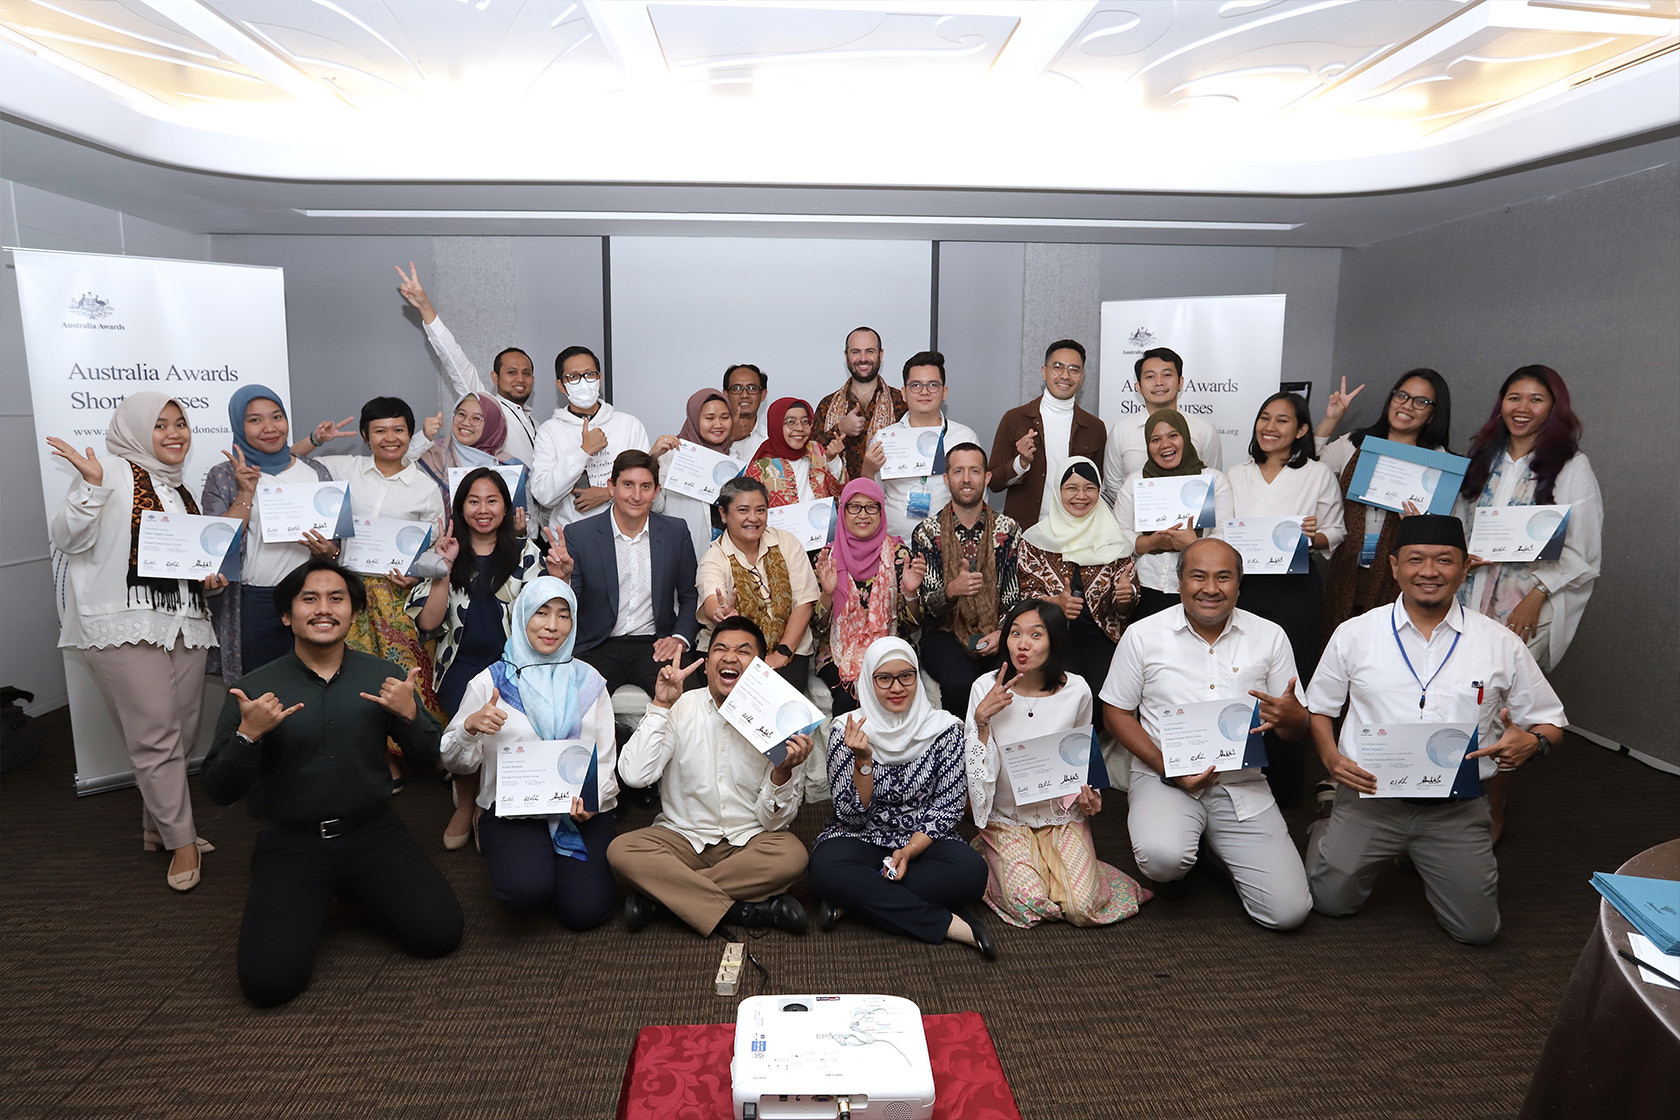 Los participantes del curso corto sobre financiamiento climático de los premios Australia toman una foto grupal que muestra su certificado de finalización